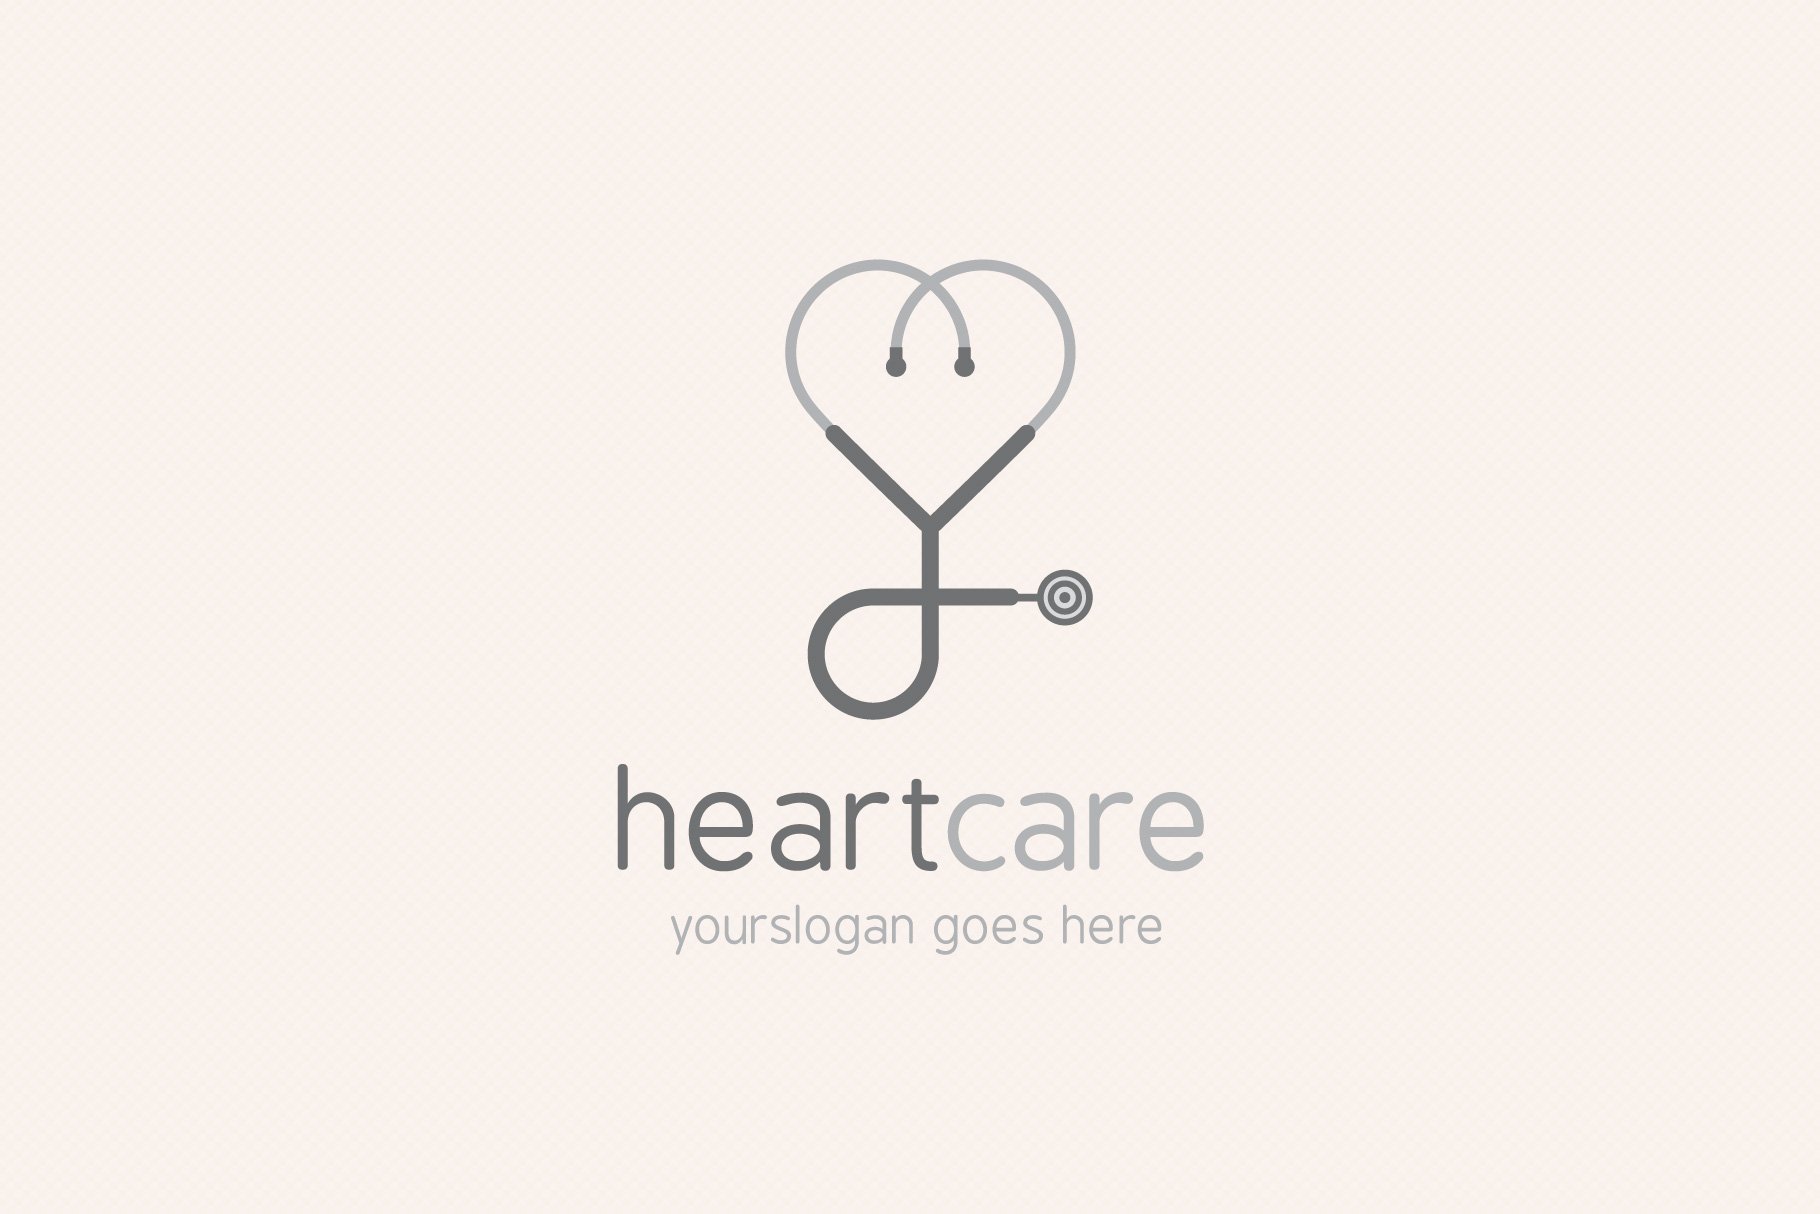 thumb02 heart care logo 972